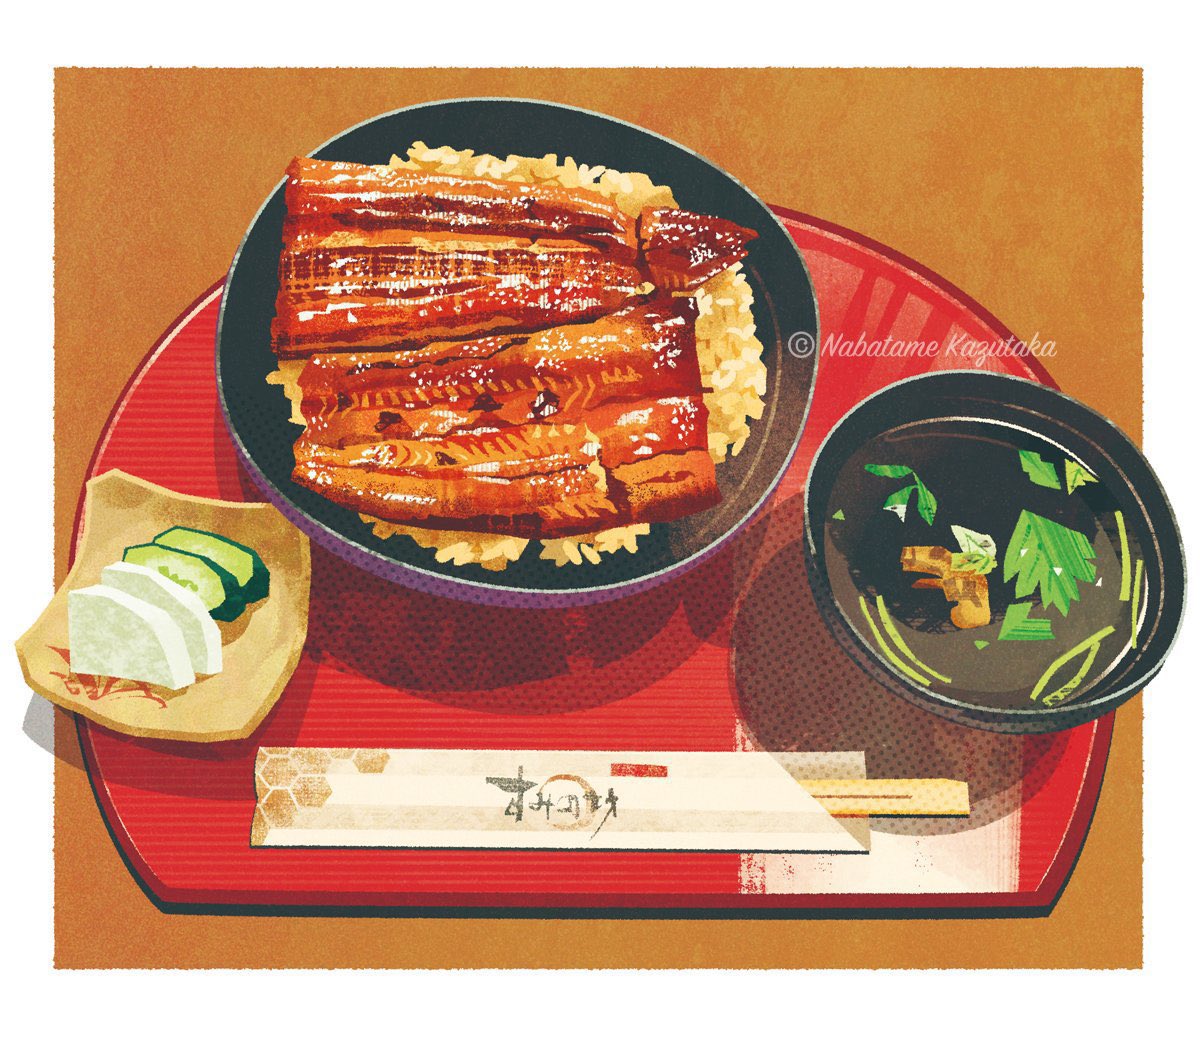 「前に描いたうな丼です。三島大社前の「すみの坊」で頂きました。 」|生田目 和剛 (ナバタメ・カズタカ)のイラスト